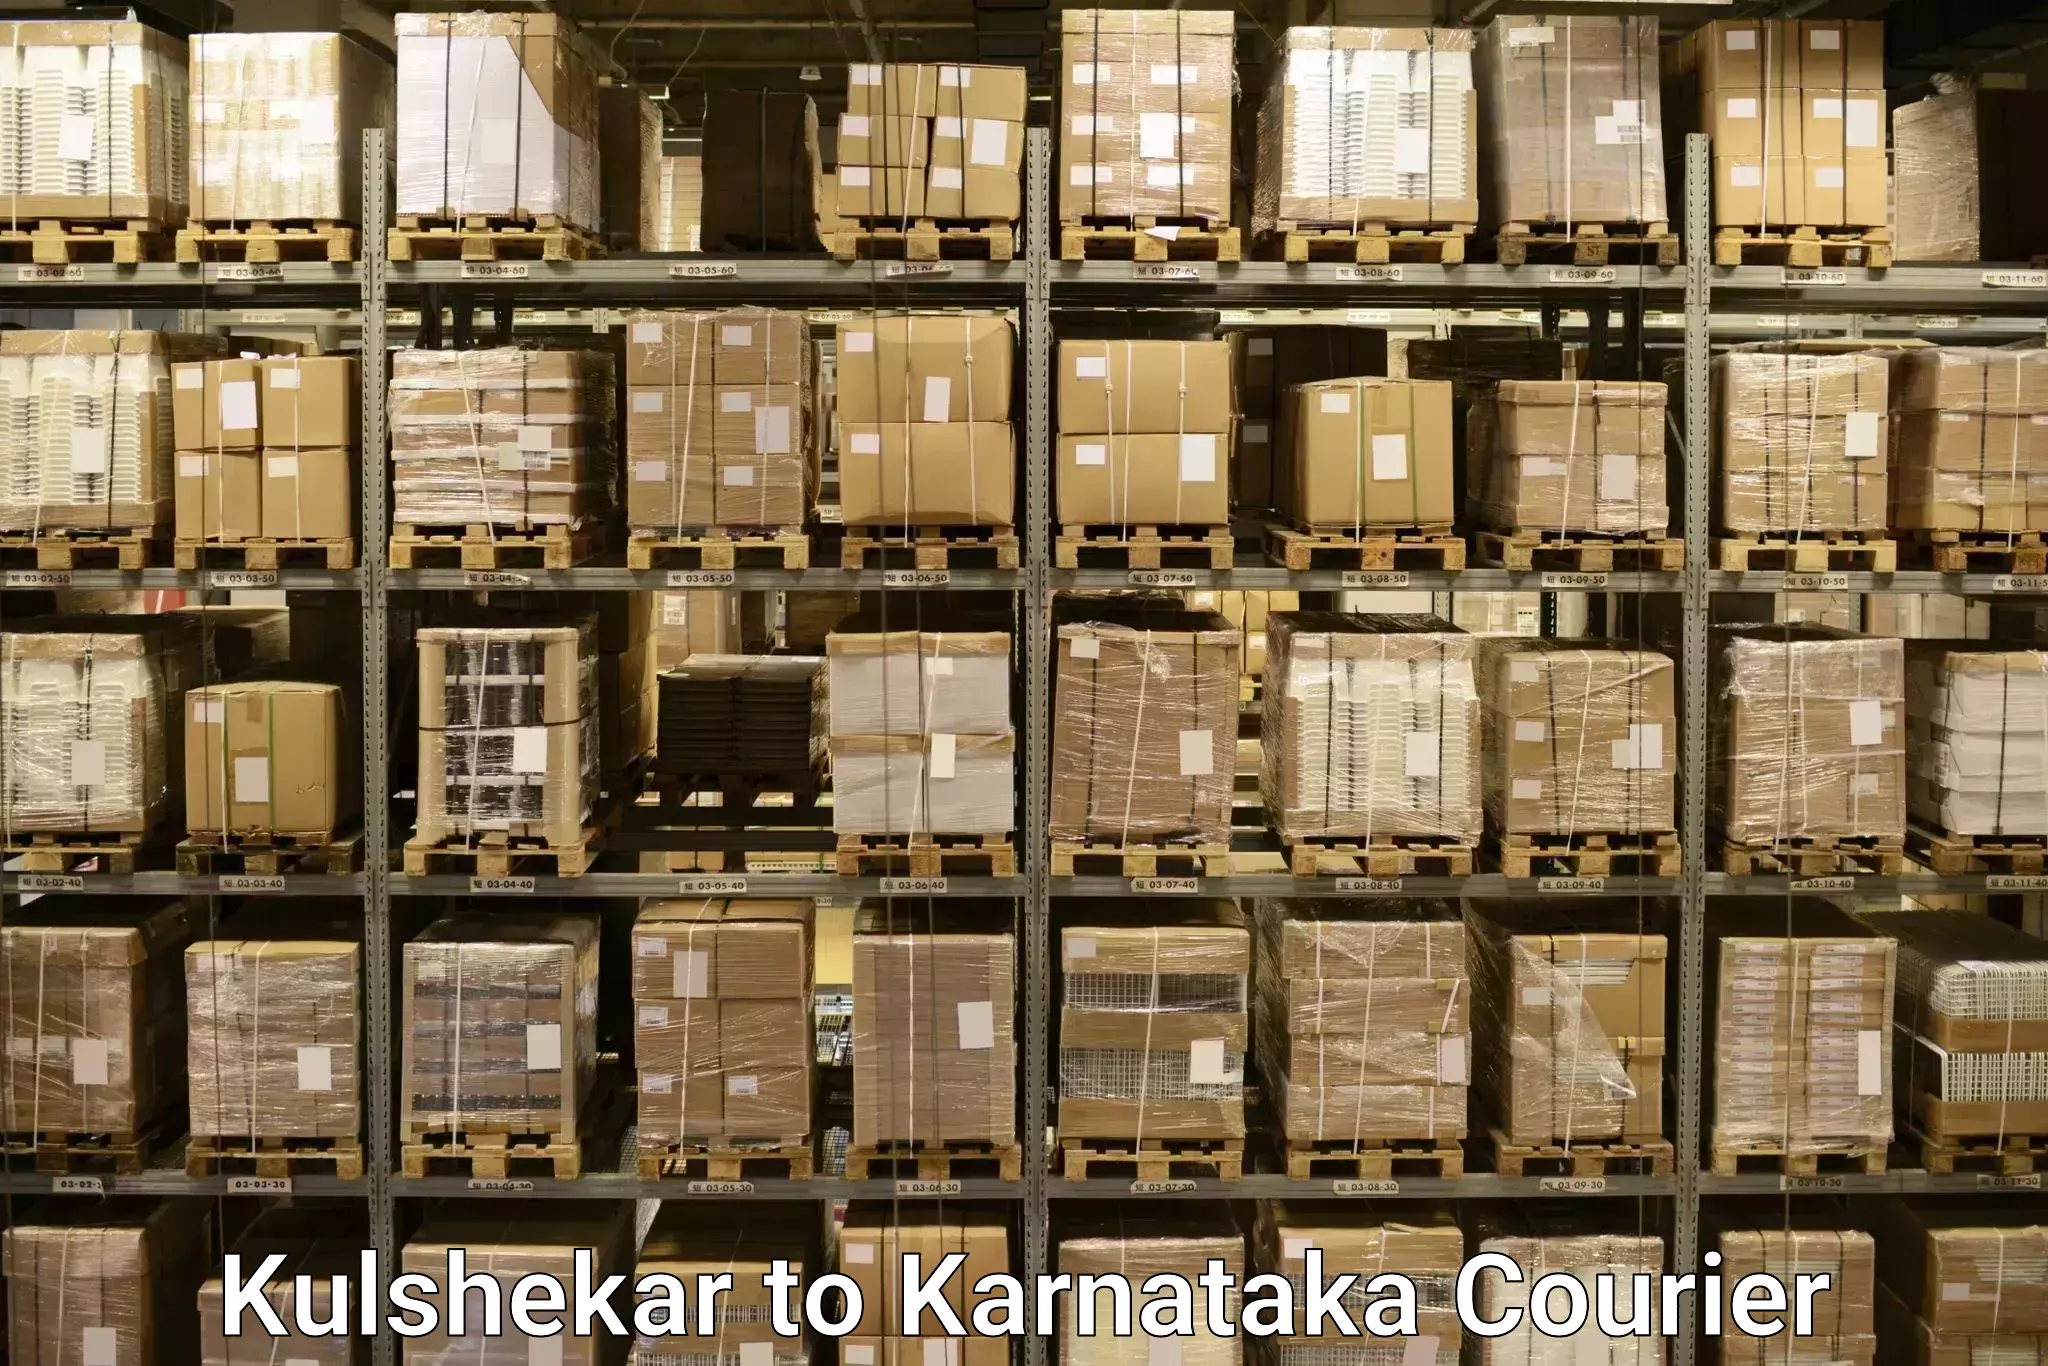 Baggage shipping advice Kulshekar to Srirangapatna